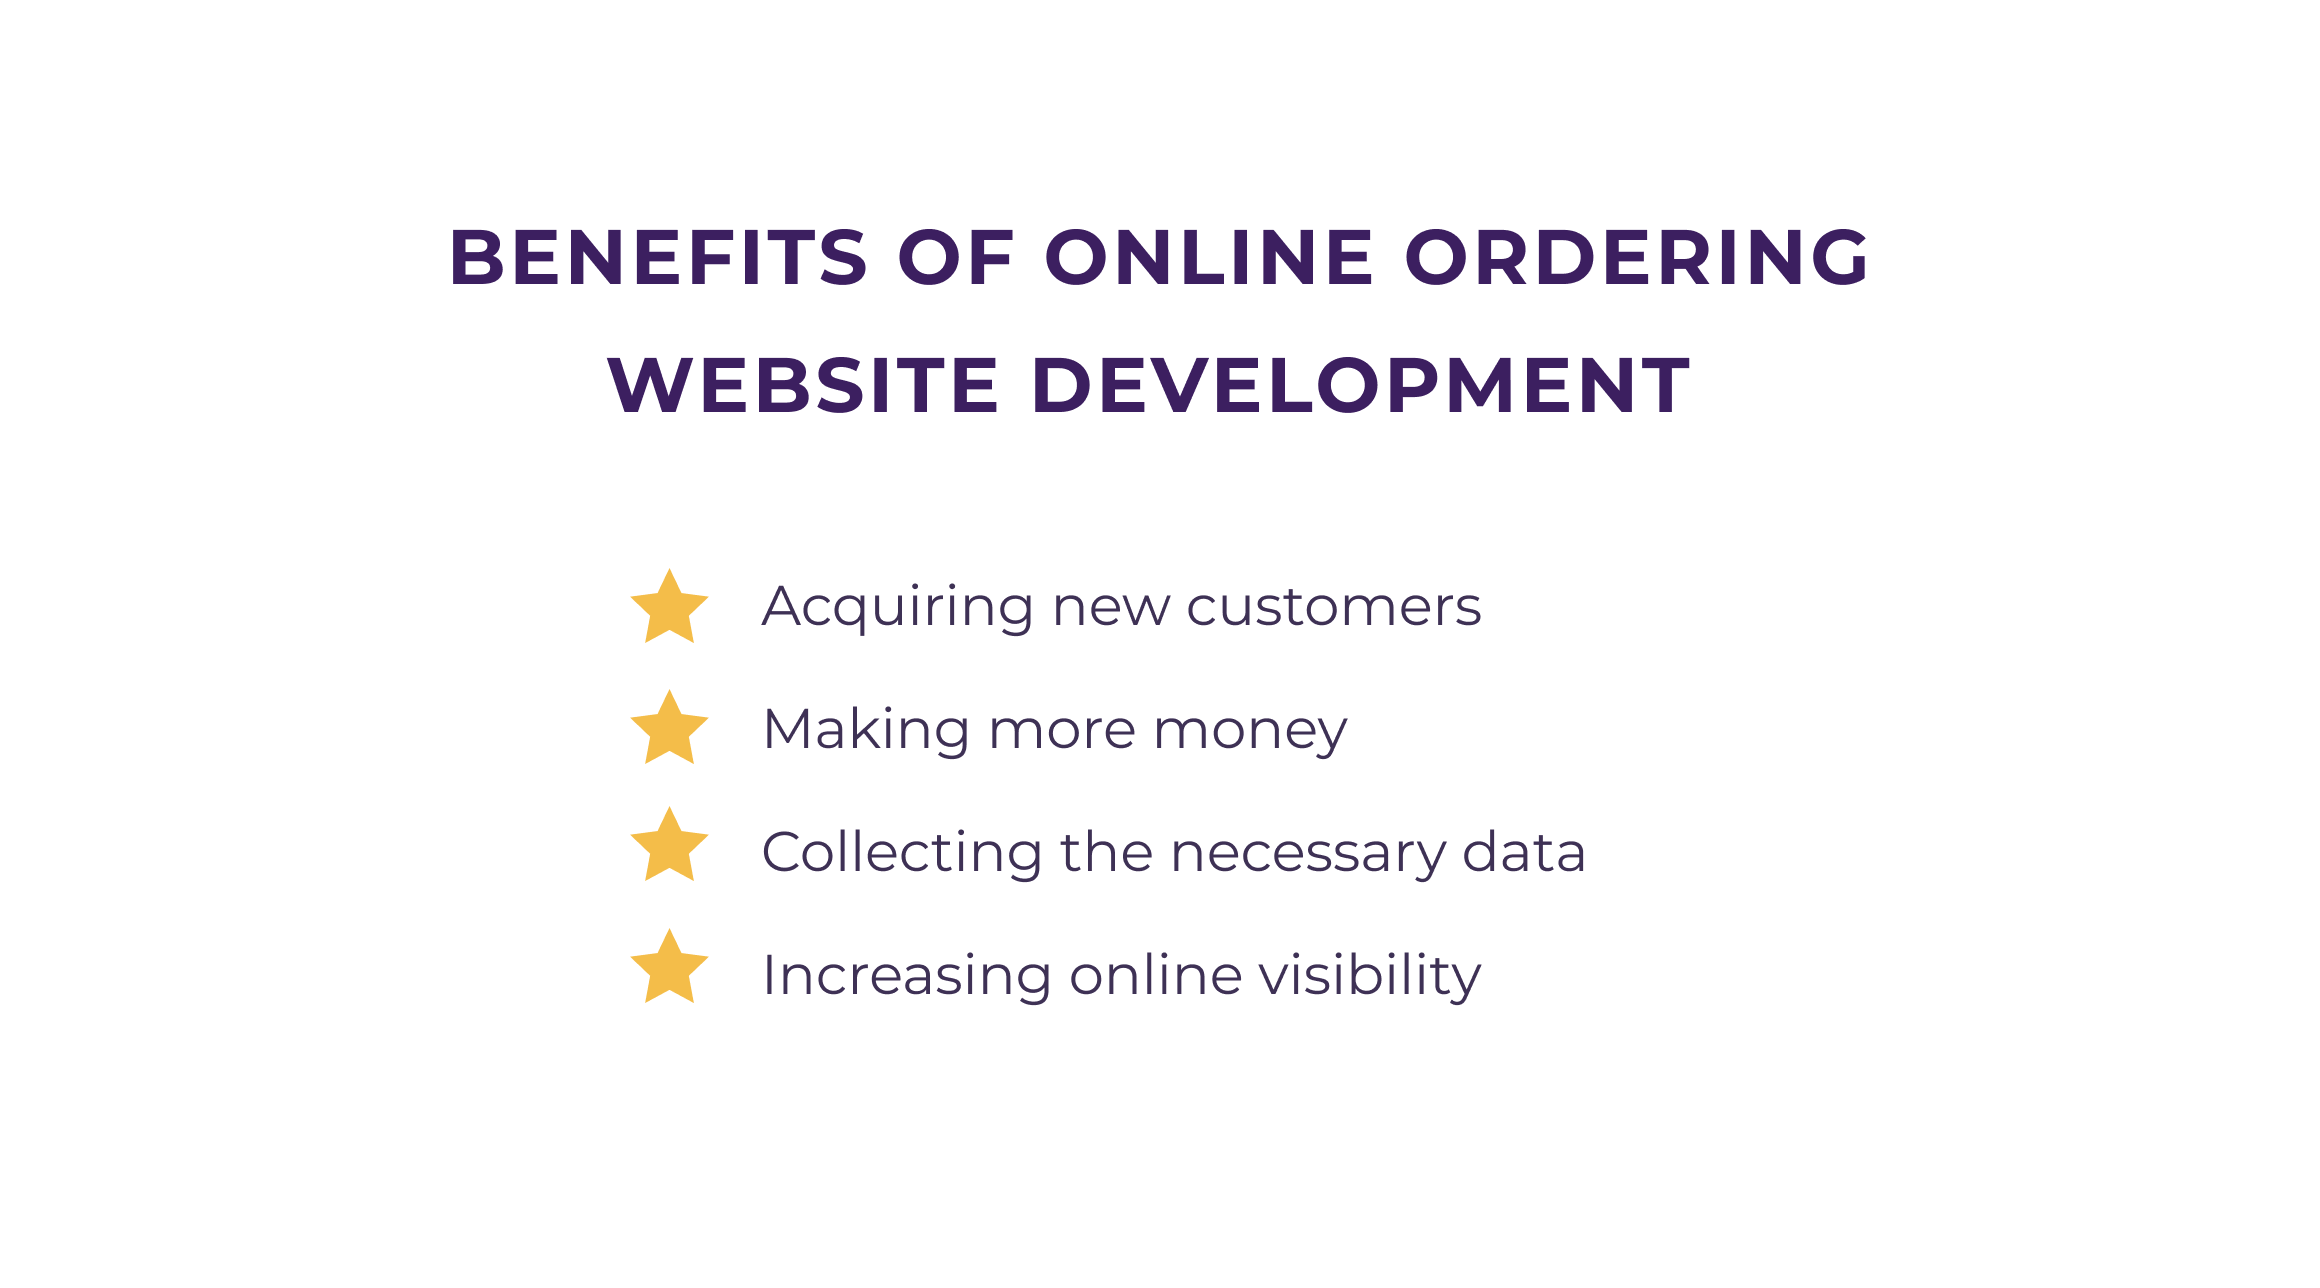 Benefits of online ordering website development 